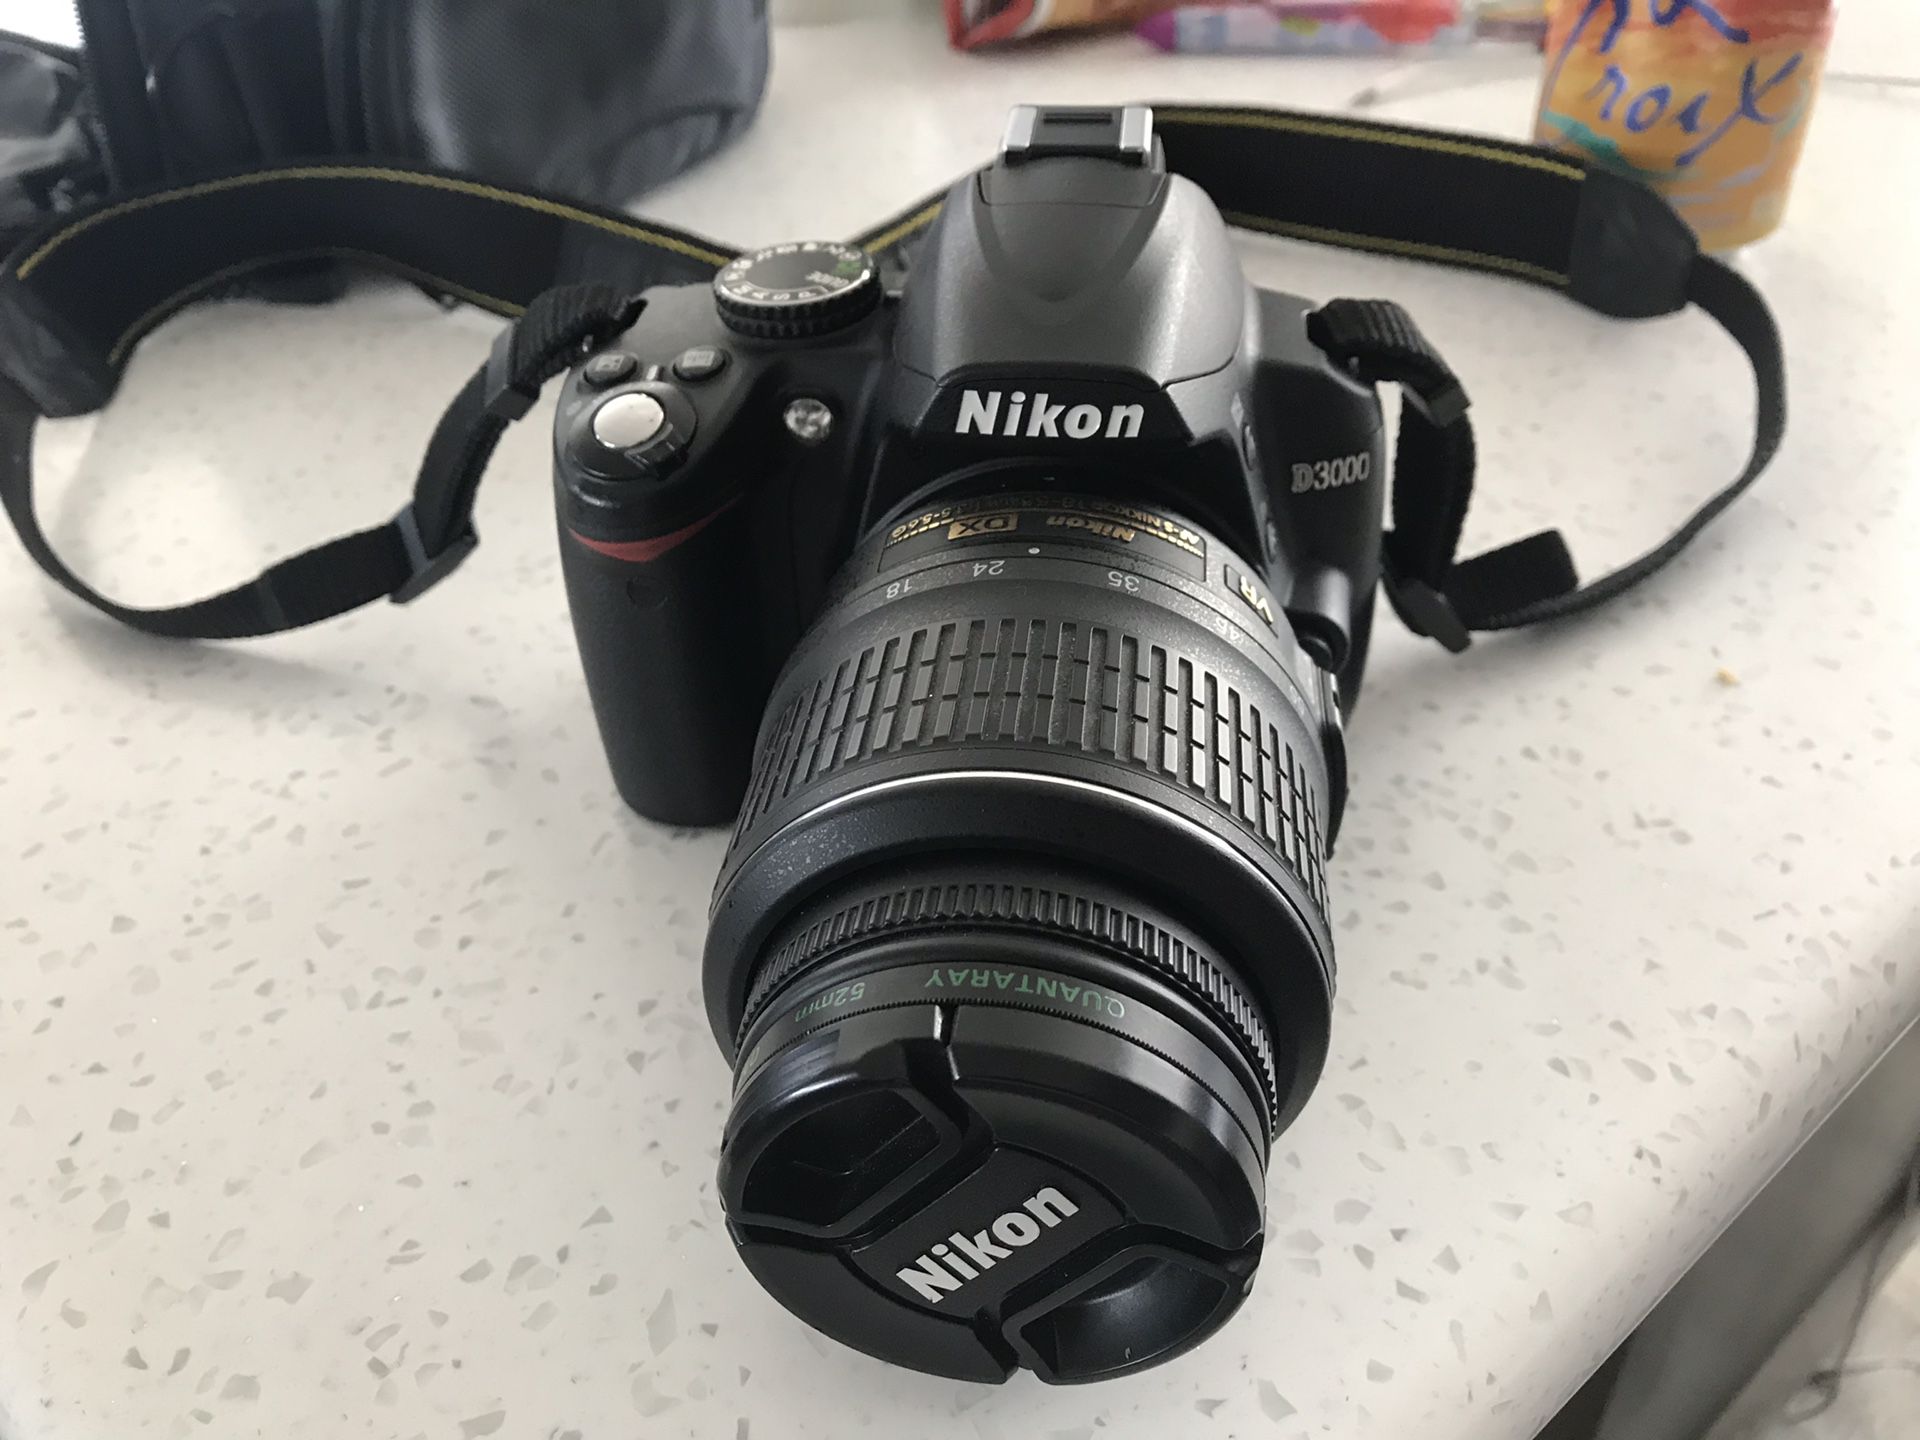 Nikon d3000 dslr camera